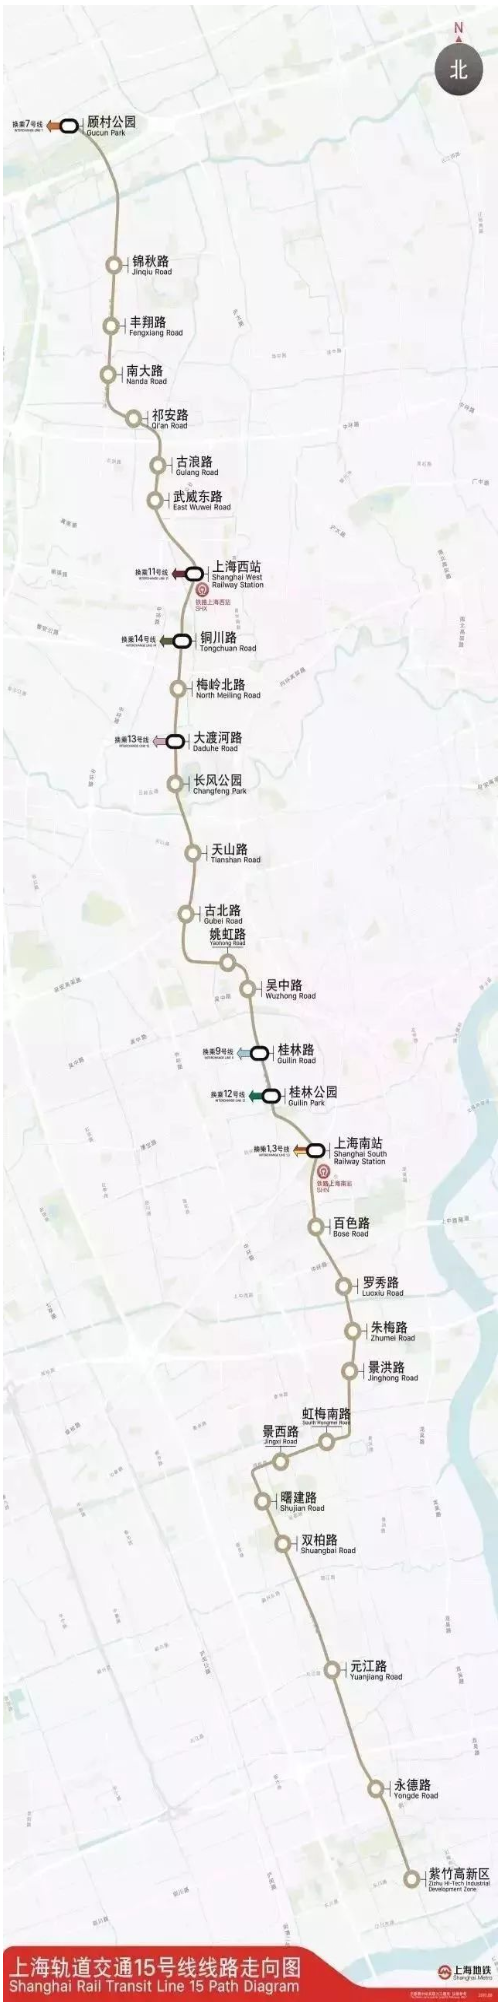 上海地铁号线线路图